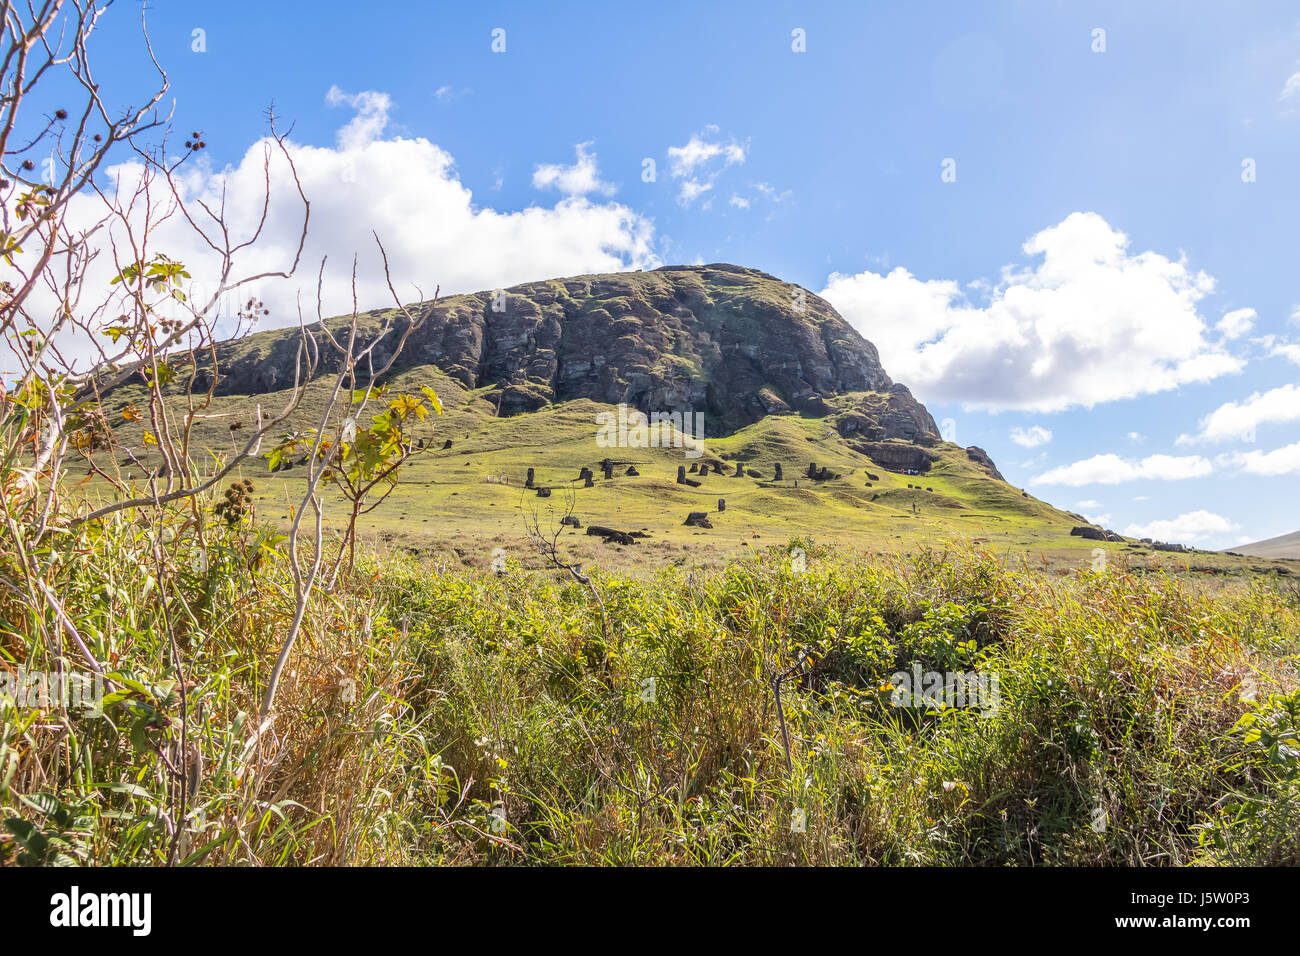 Il Rano Raraku Vulcano cava dove Moai statue erano scolpite - Isola di Pasqua, Cile Foto Stock